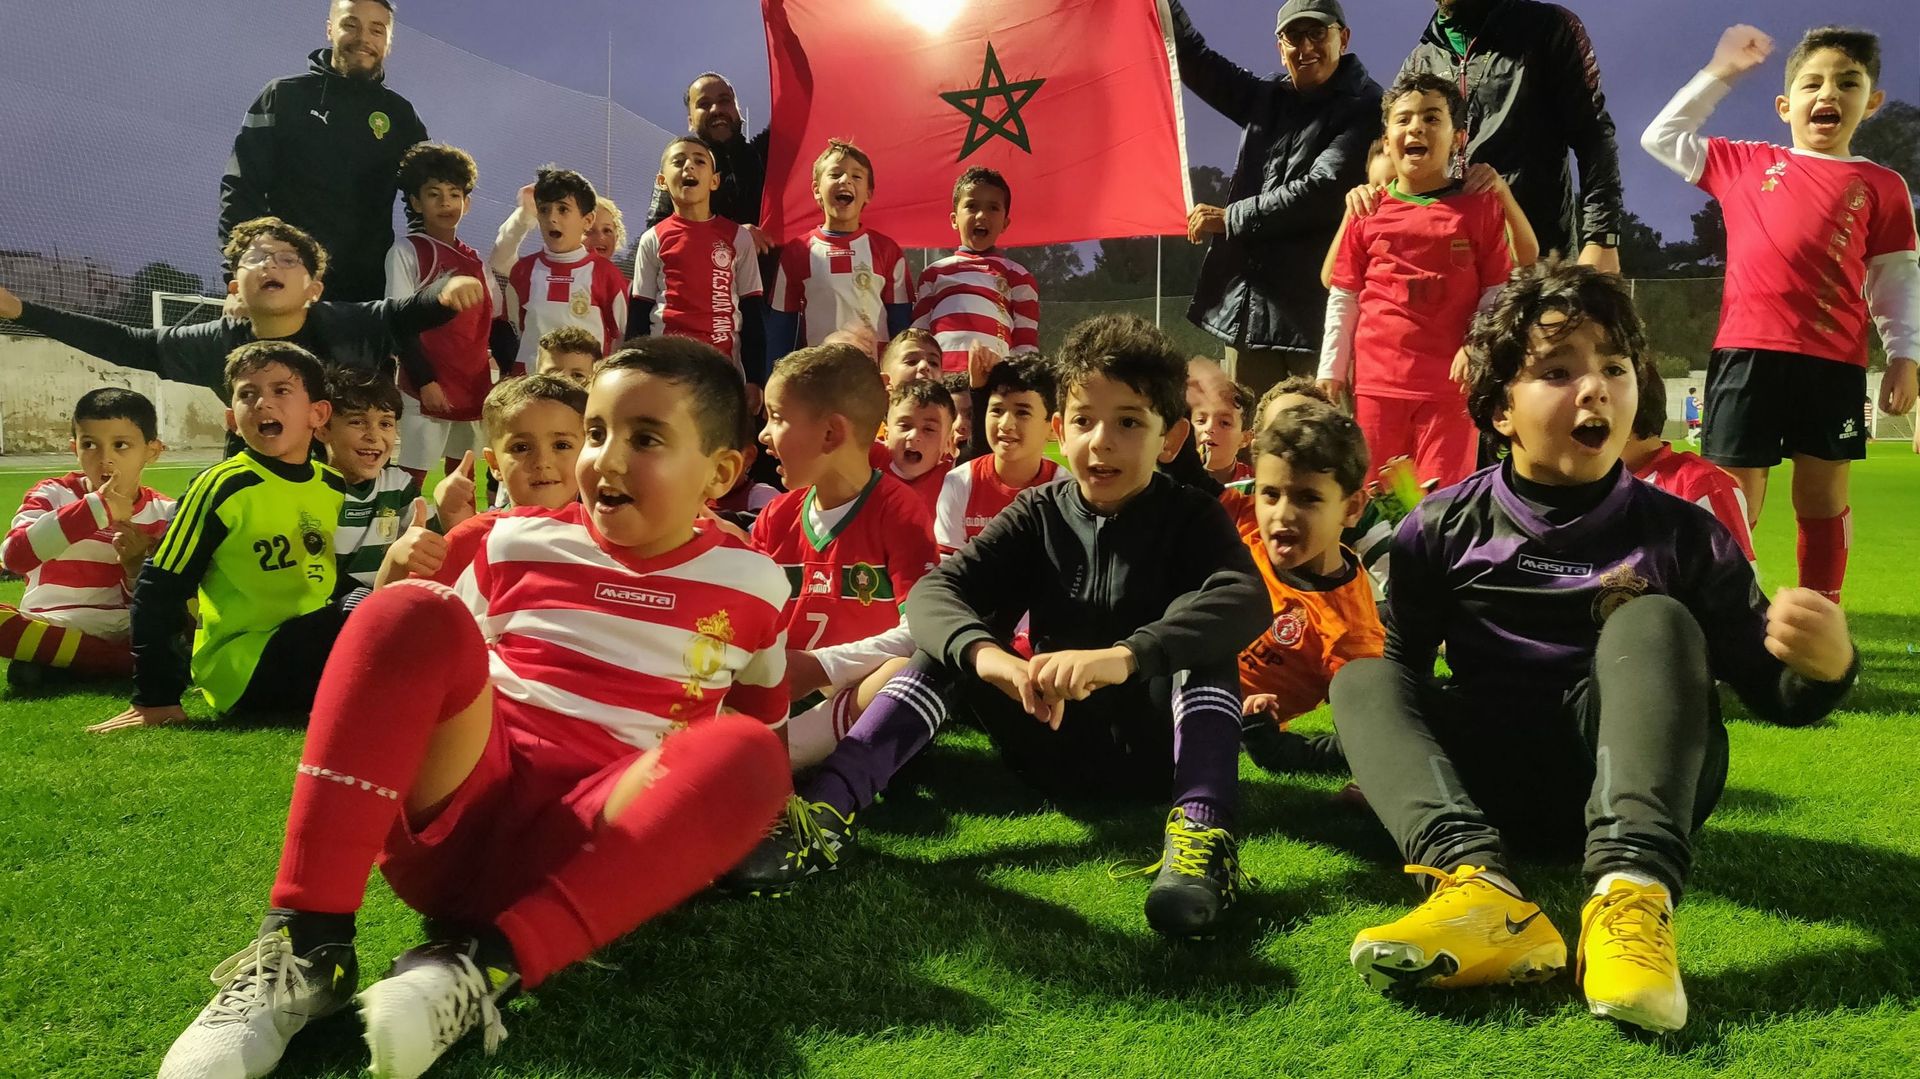 A Tanger, les apprentis footballeurs rêvent d’imiter les Lions de l’Atlas et croient en leur chance de battre la France